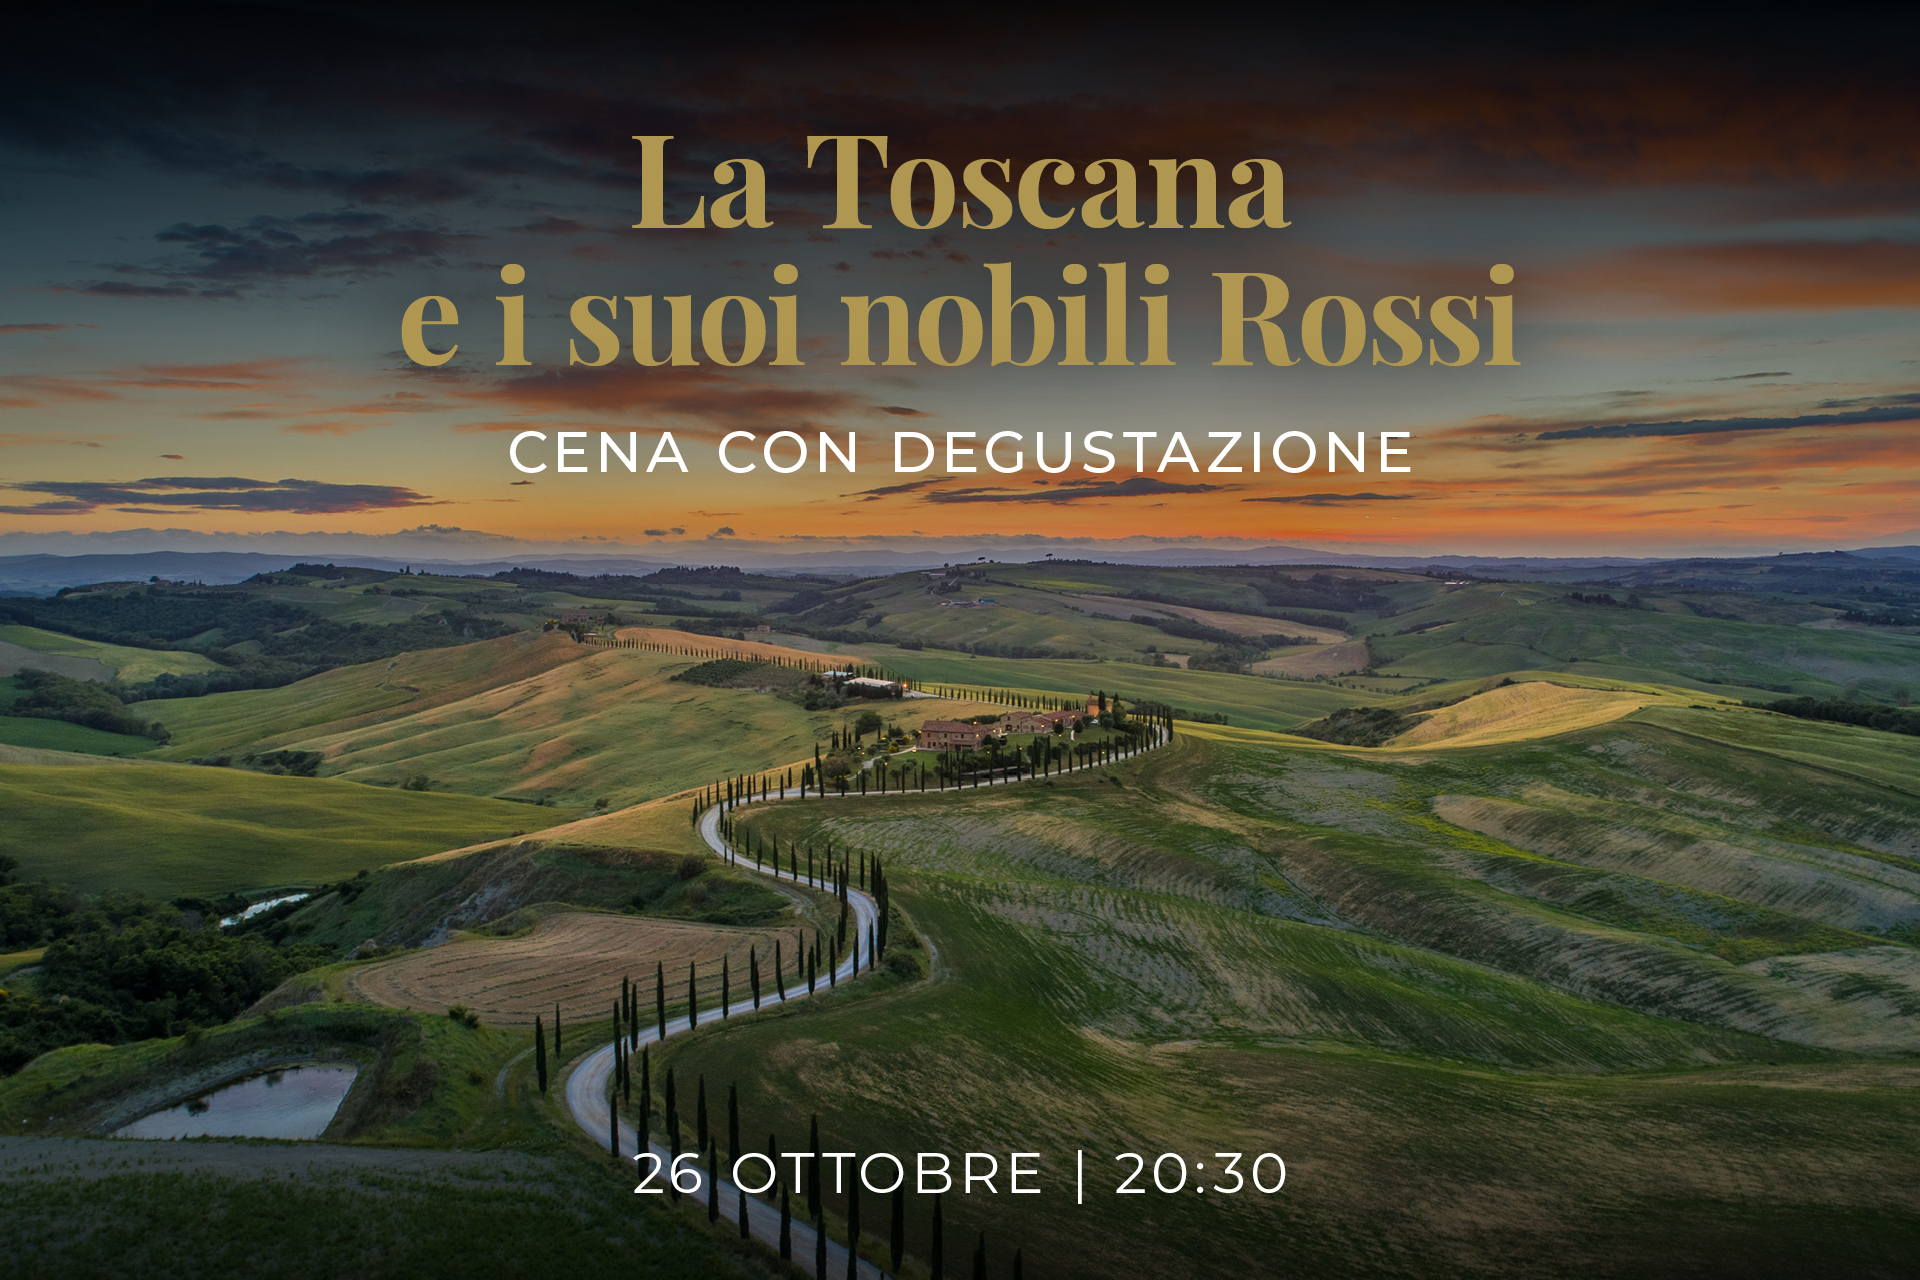 La Toscana e i suoi nobili Rossi